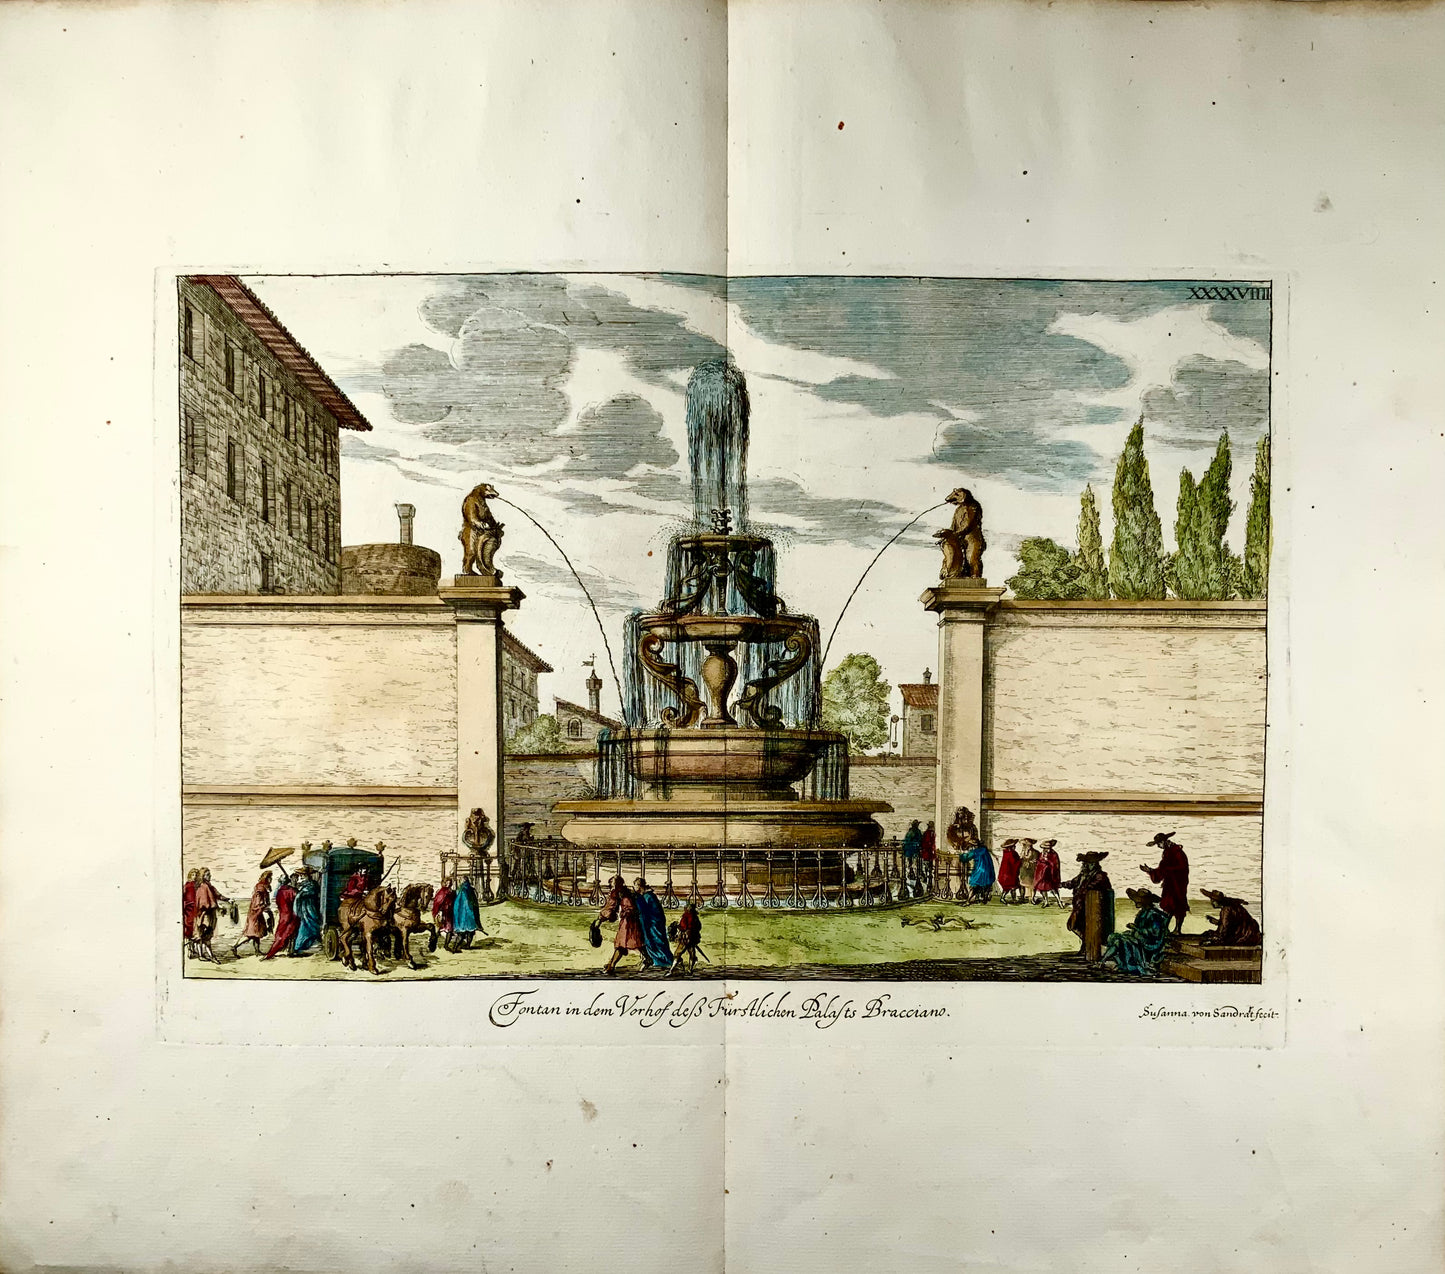 1679 Susanna von Sandrart, Fountain Bracciano in Rome, Italy, hand colored double folio, classical architecture